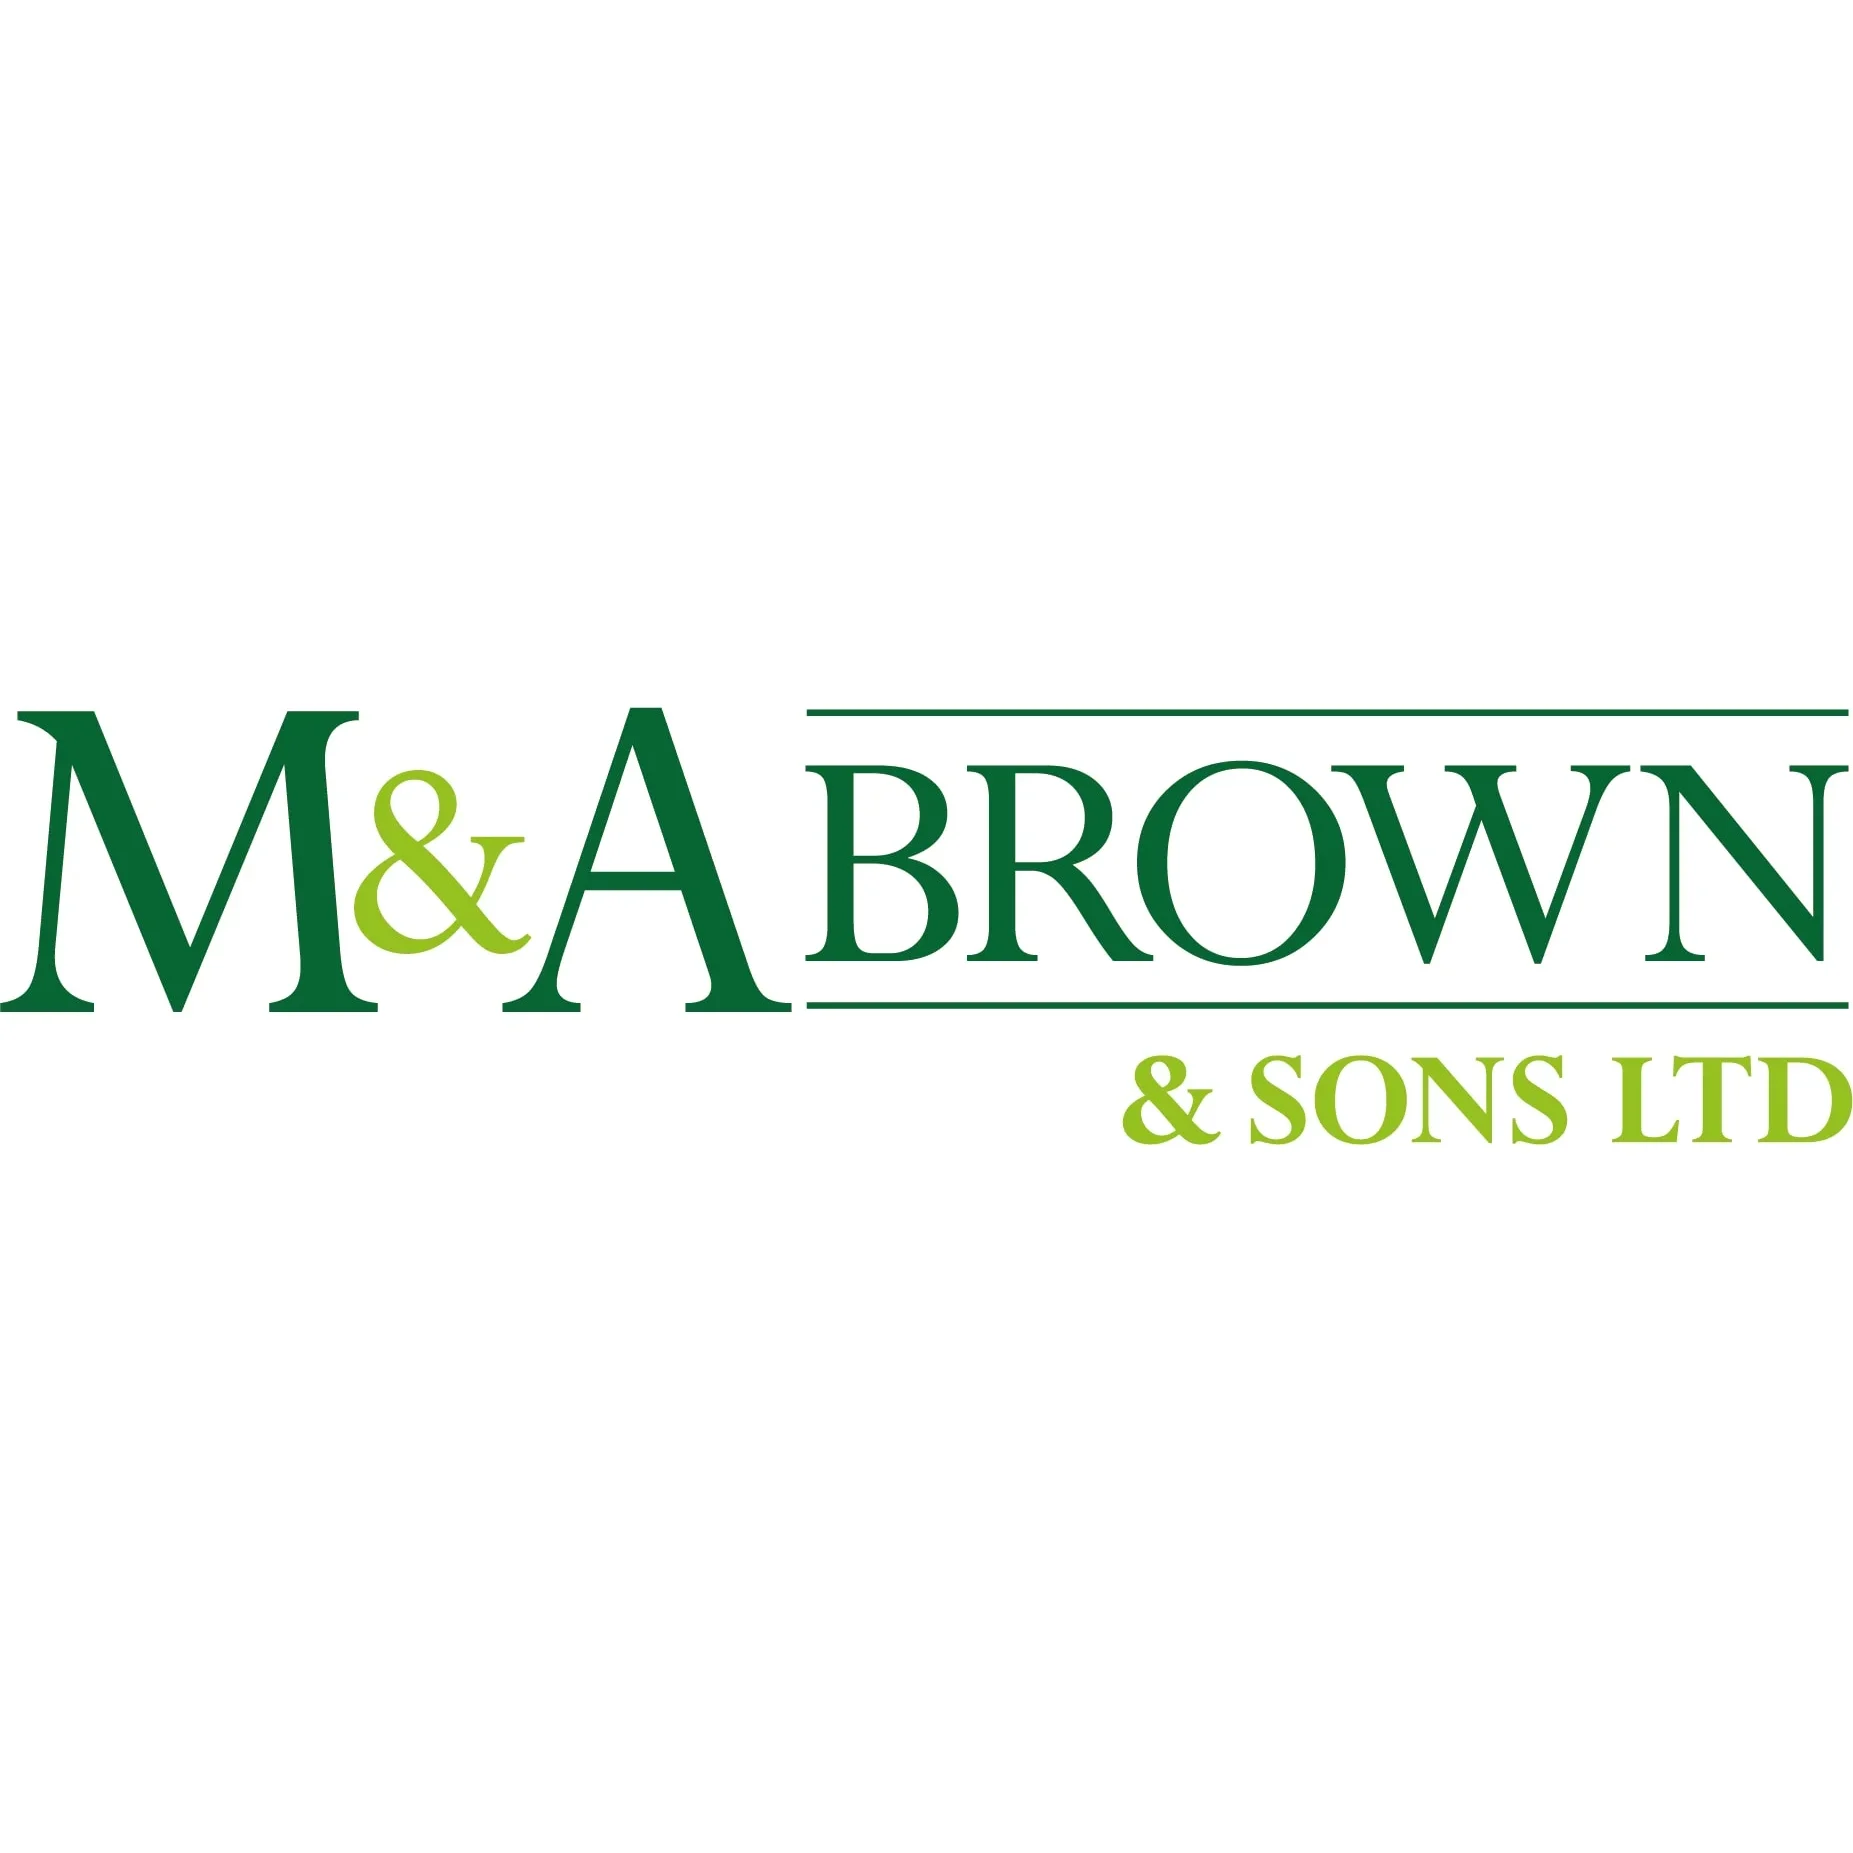 M & A Brown & Sons Ltd - Cranbrook, Kent TN17 2PA - 01580 211599 | ShowMeLocal.com